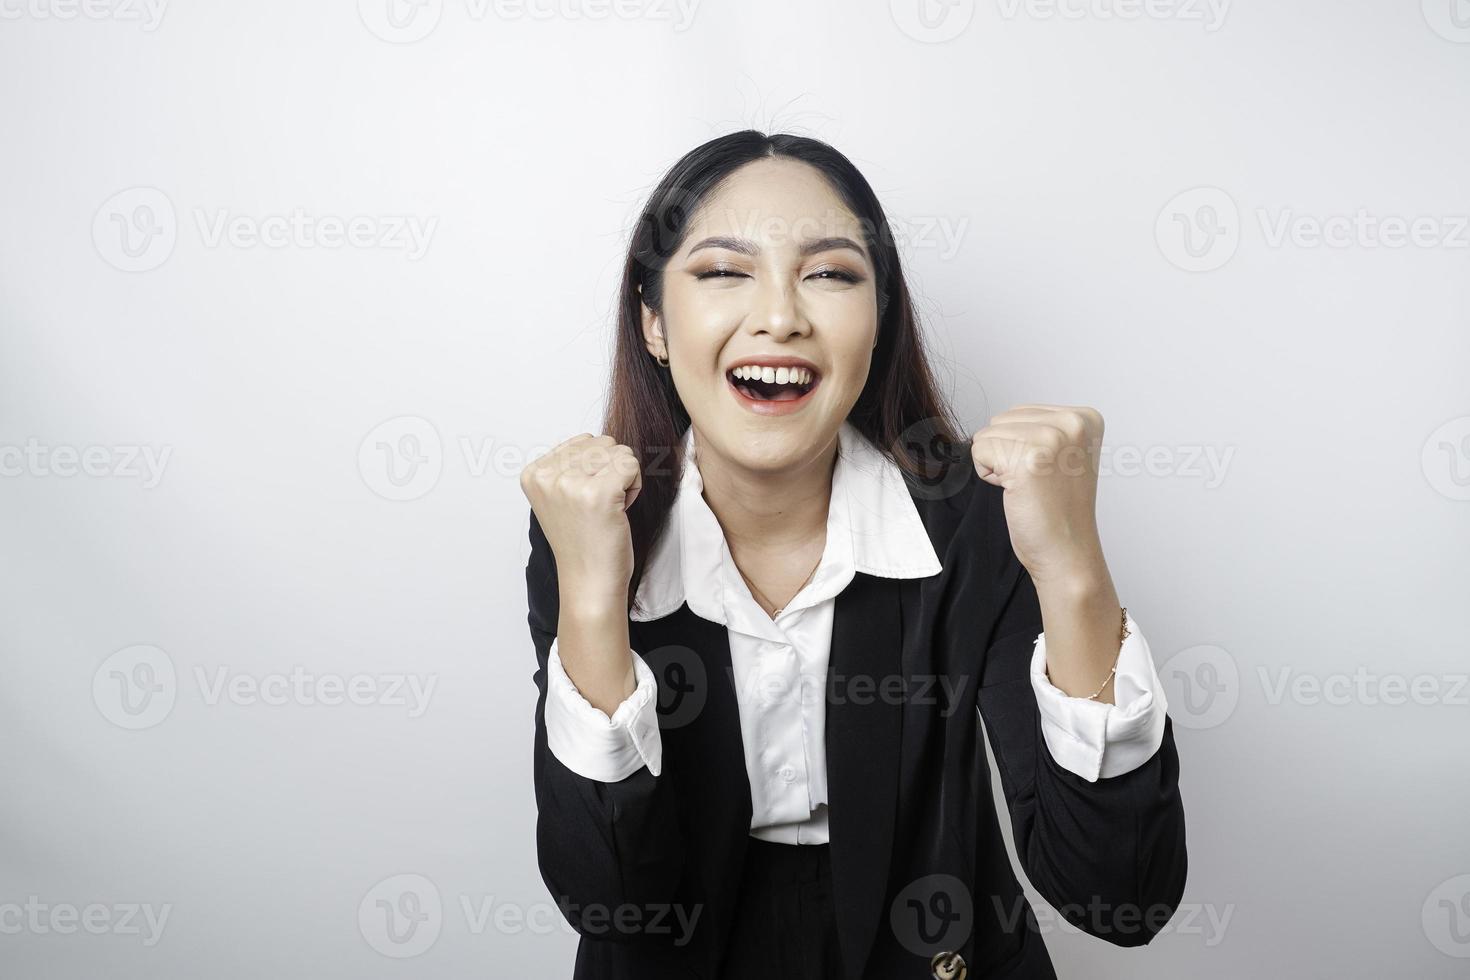 une jeune femme d'affaires asiatique avec une expression heureuse et réussie portant un costume noir isolé sur fond blanc photo